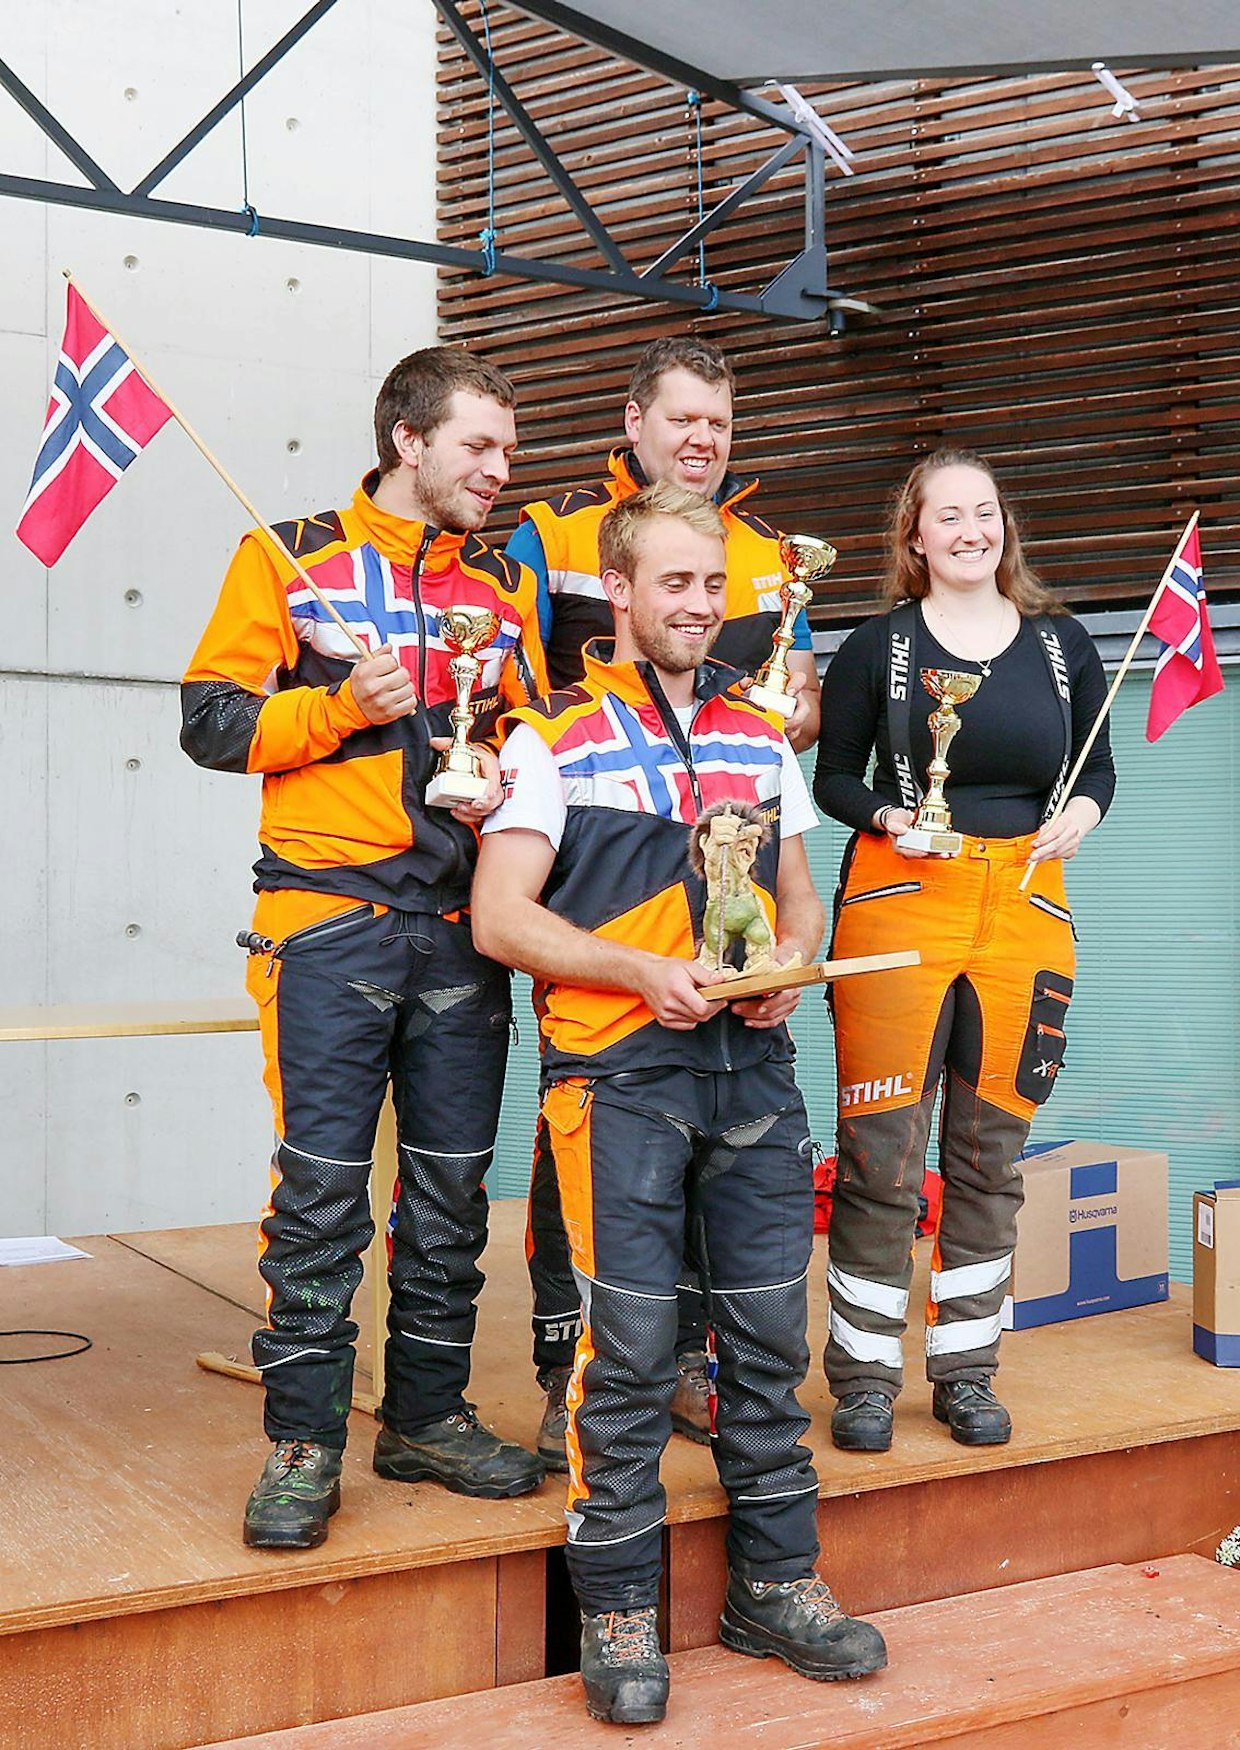 Norjan joukkue otti PM-mestaruuden. Joukkueessa sahasivat Pål Agnar Tveitan (yksilökilpailun 2.), Ove Knut Eggum, Halvor Stavdal ja naiskilpailija Trude Sletten. Sletten voitti myös naisten kilpailun, voittaen alta-päältäsahauksen ja karsinnan.